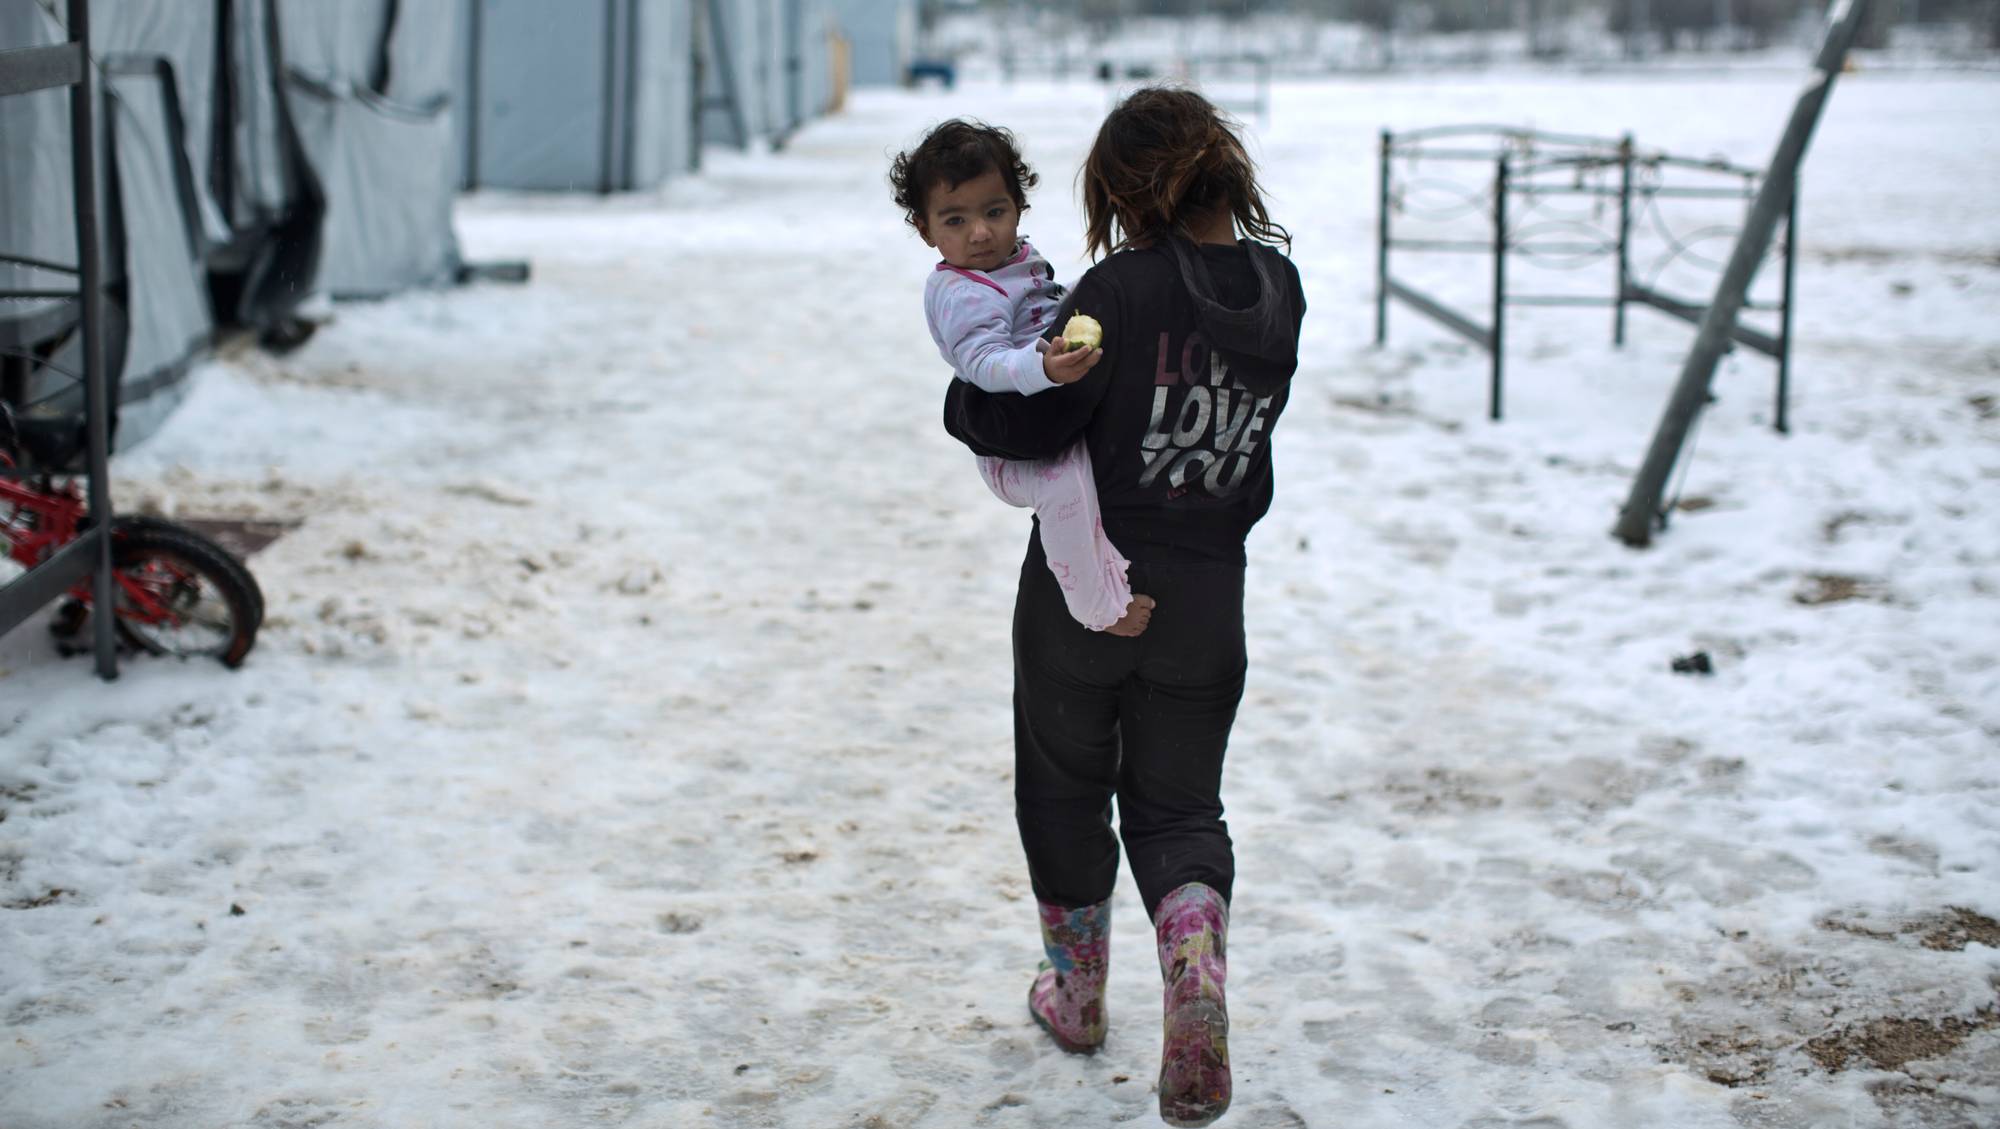 Детях fora. Syria children Winter. Маленькие дети беженцы. Сирийские дети учатся на улице зимой. Ролик о мирной жизни детей.